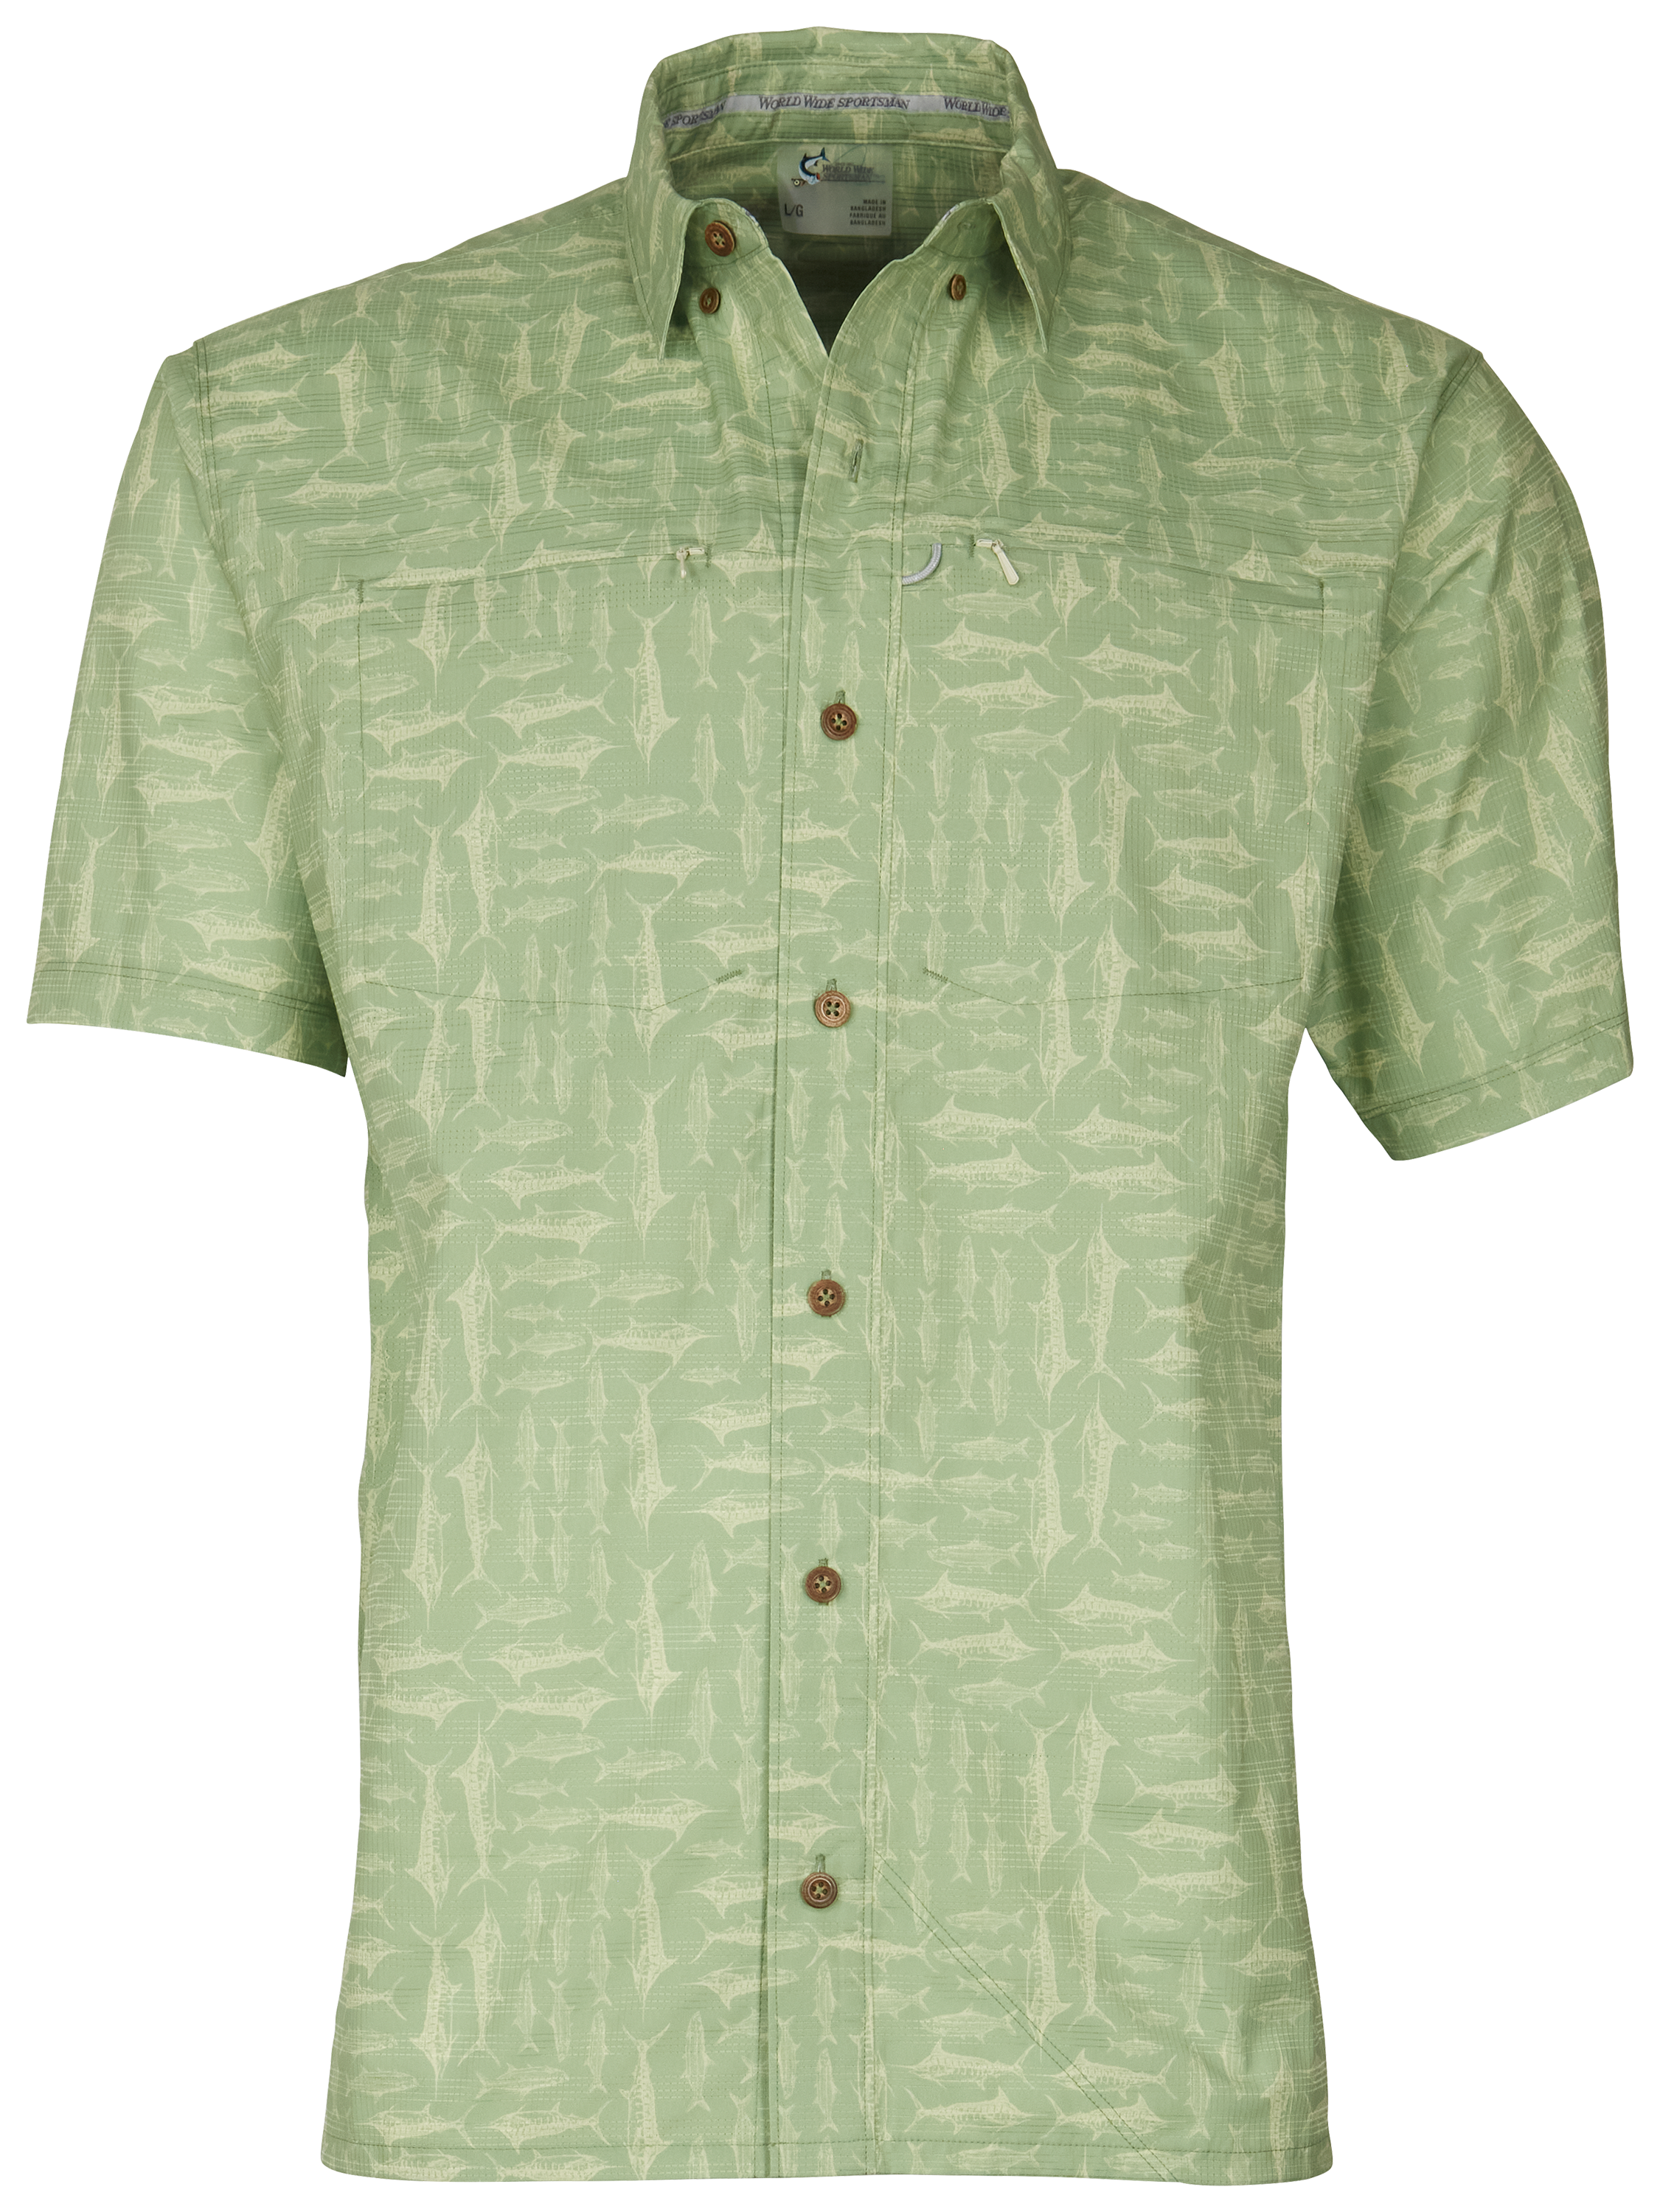 World Wide Sportsman Seacrest Print Short-Sleeve Button-Down Shirt for Men - Quiet Green Salt Rub - S